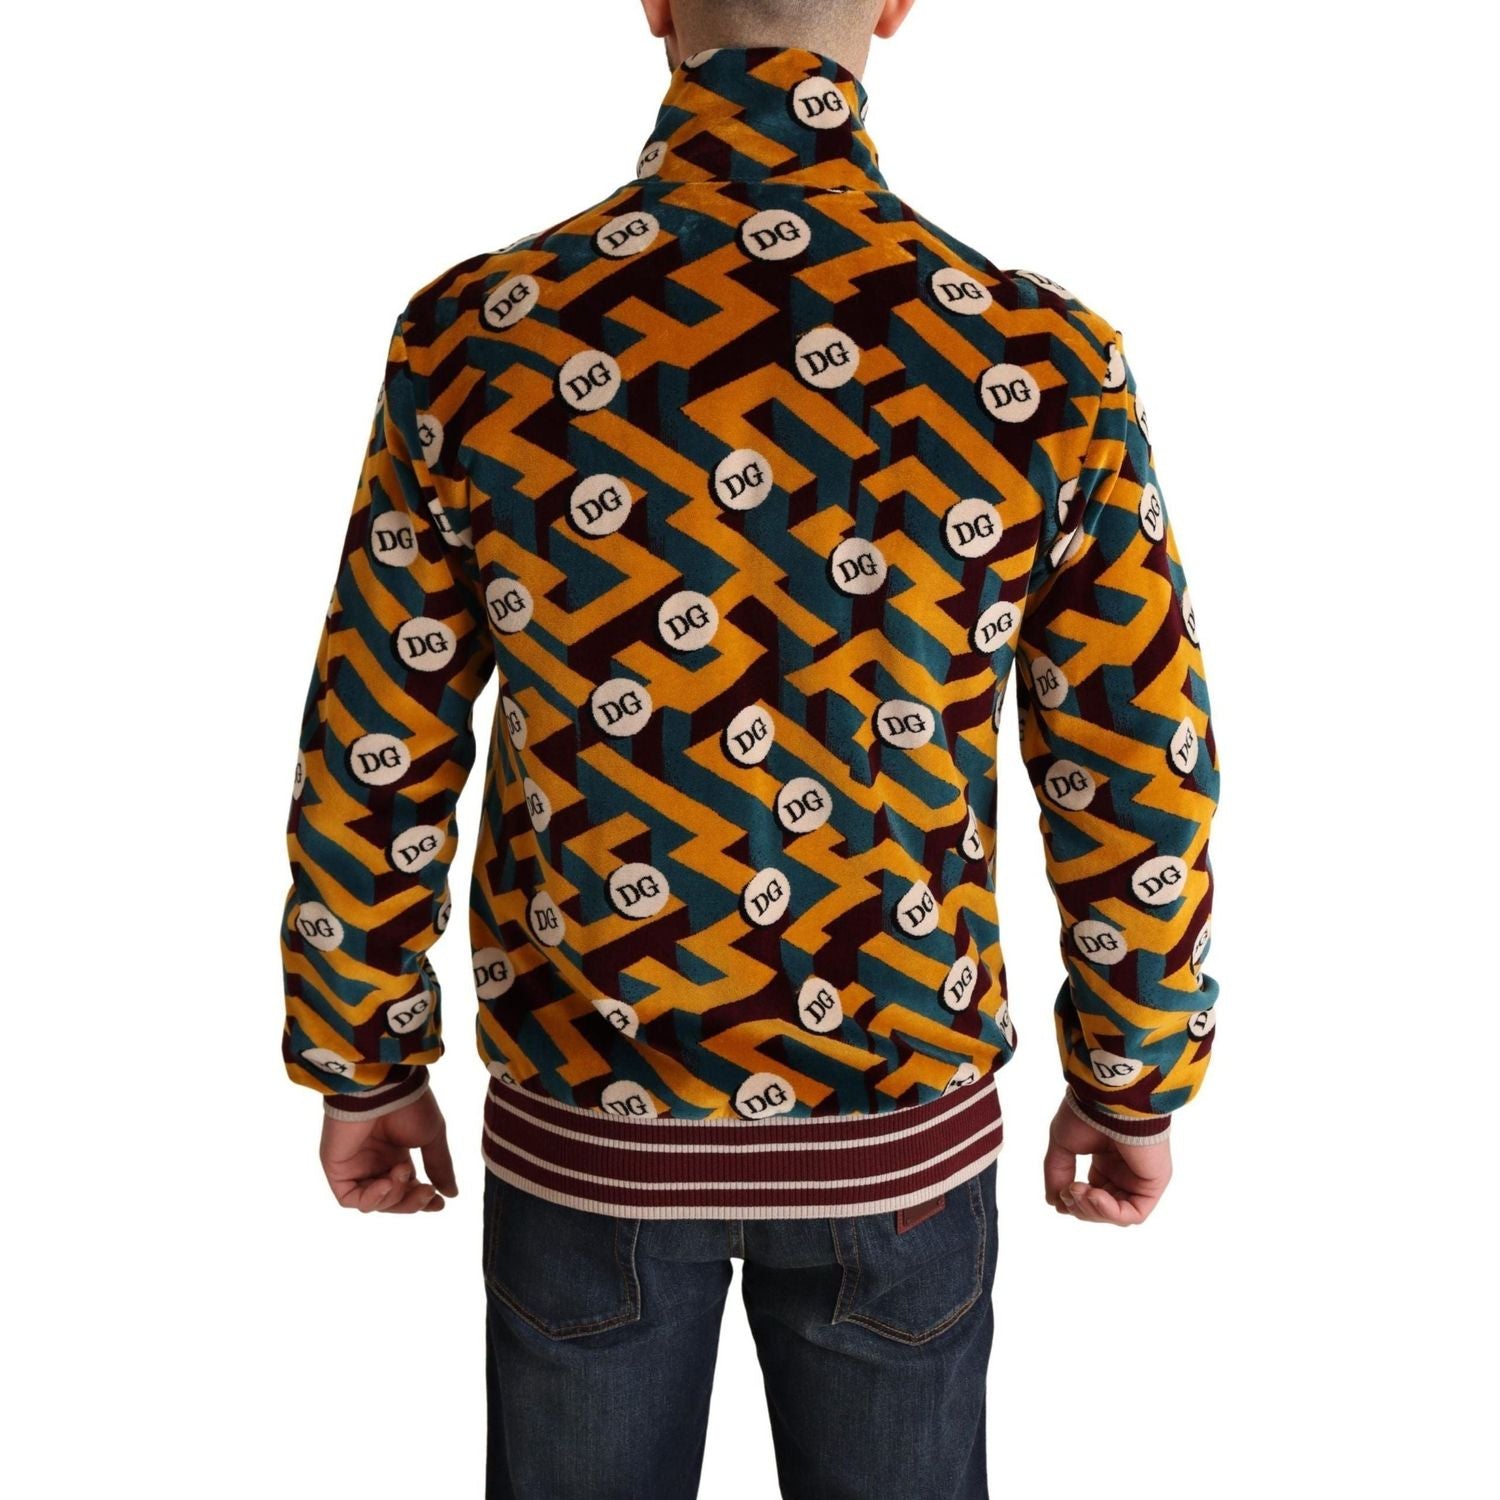 Dolce & Gabbana | Multicolor Velvet DG Logo Mens Sweater Jacket | 629.00 - McRichard Designer Brands